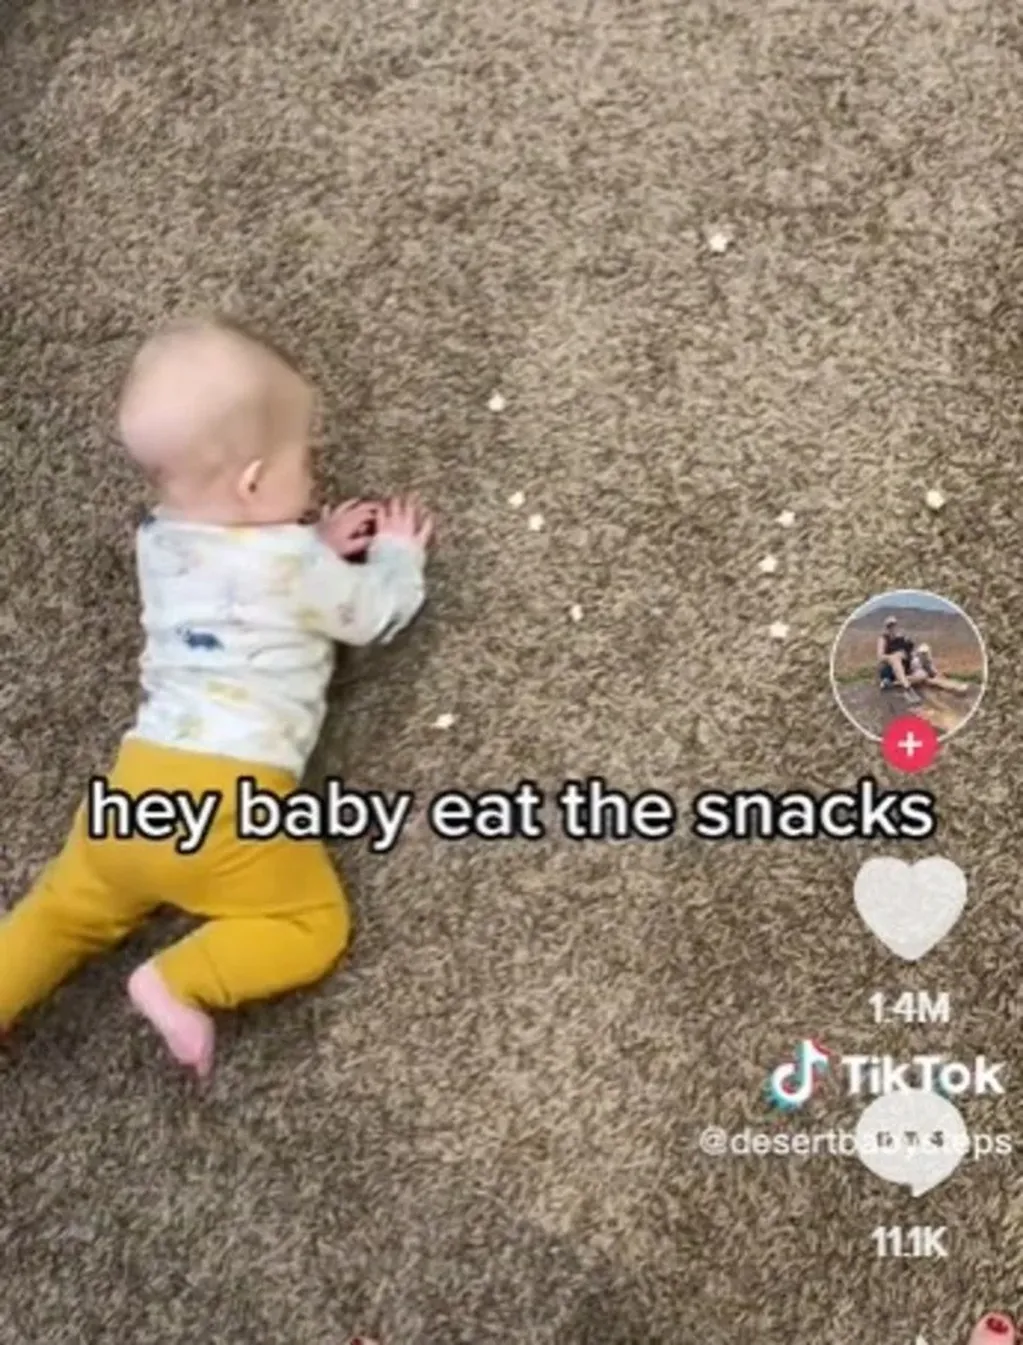 La mujer subió un video a TikTok alimentando a su hijo de una forma particular y estallaron las redes sociales. Foto: Web